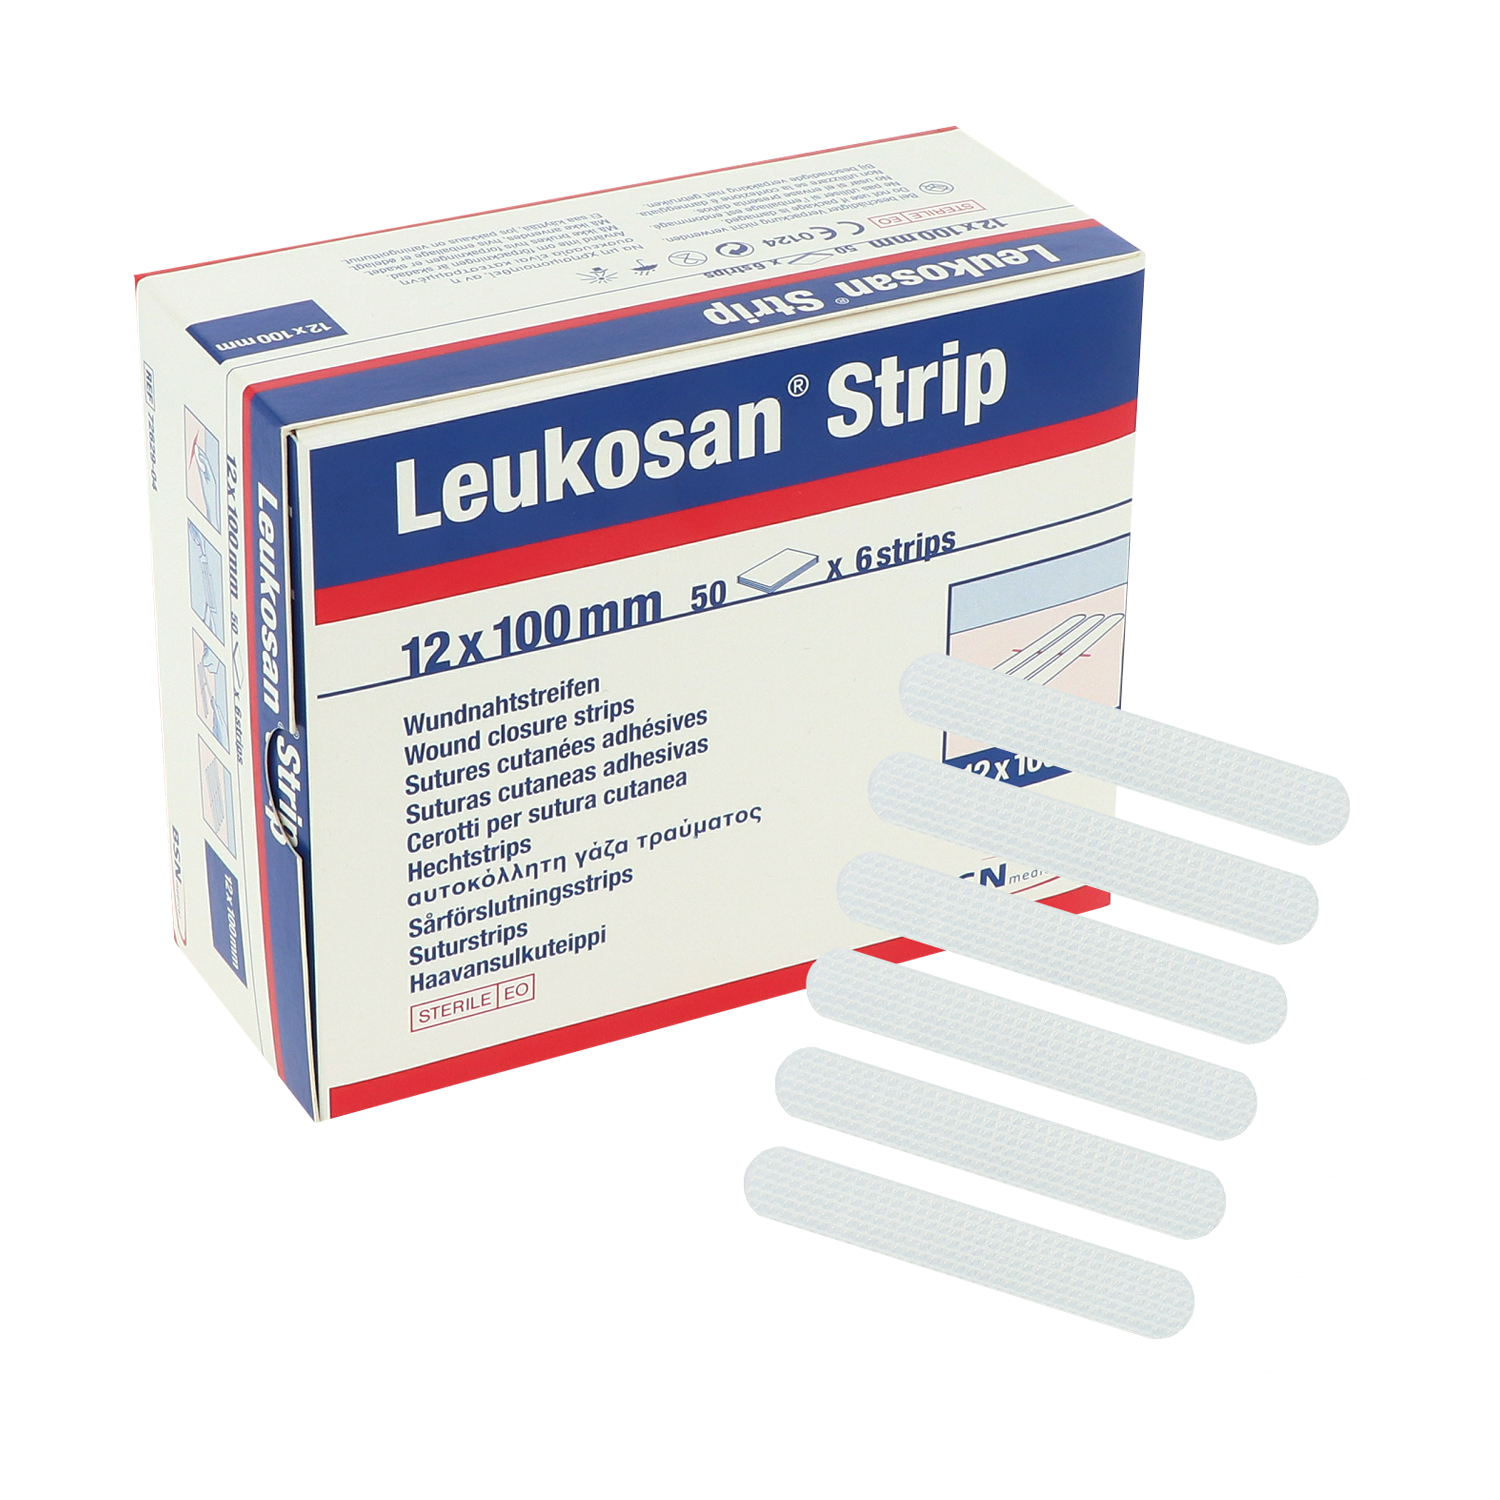 bsn-medical-leukosan-strips-sterile-wundnahtstreifen-12-x-100-mm-50-x-6-st-weiss-1-vppi-vorne-schraeg